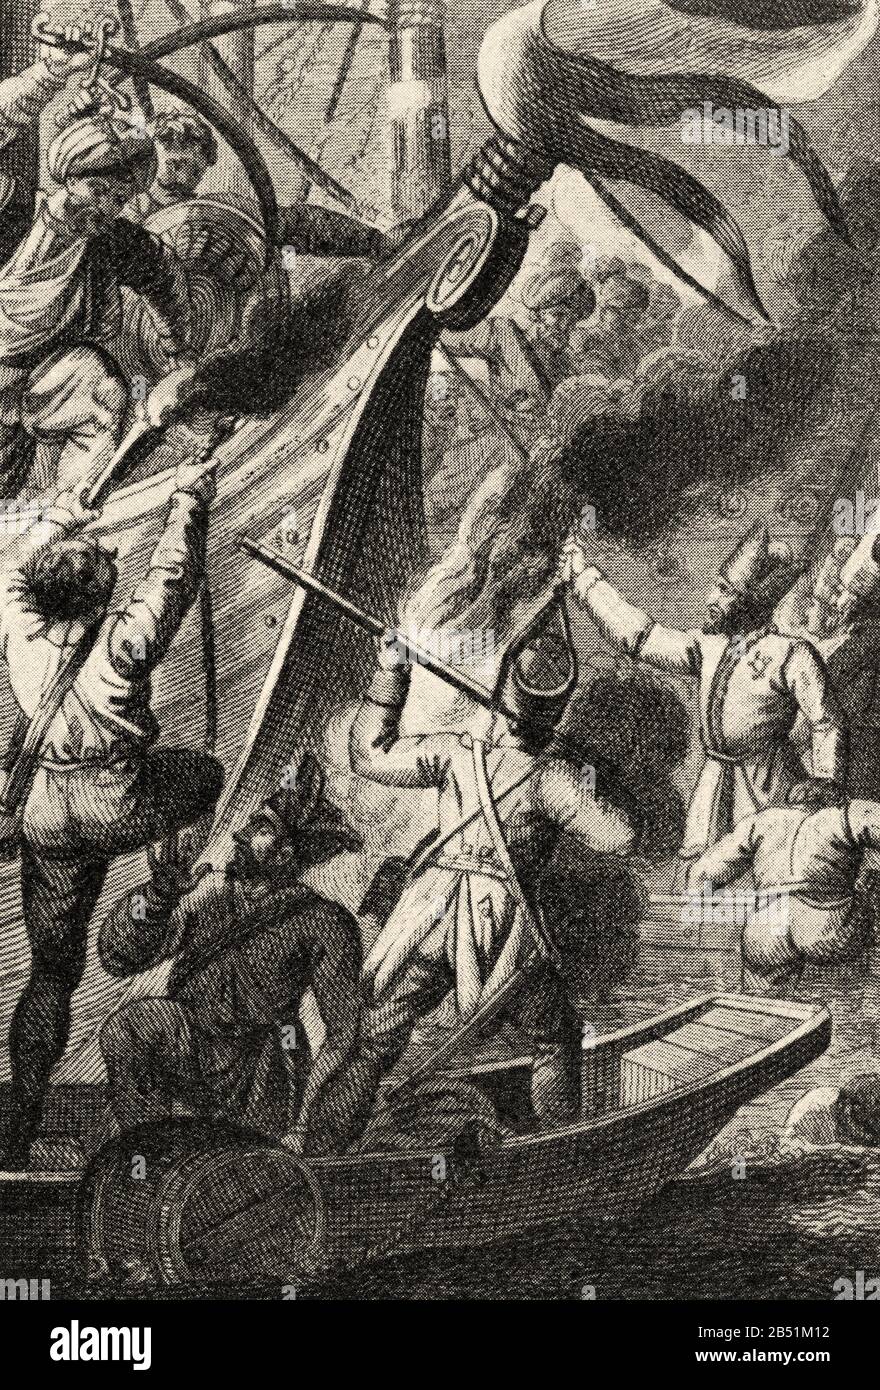 Der Russisch-Türkische Krieg von 1768-174. Admiral Orlov besiegte die türkische Truppe in Chesme. Alte Gravur des Buches Anekdotische Geschichte Russlands von J. Stockfoto